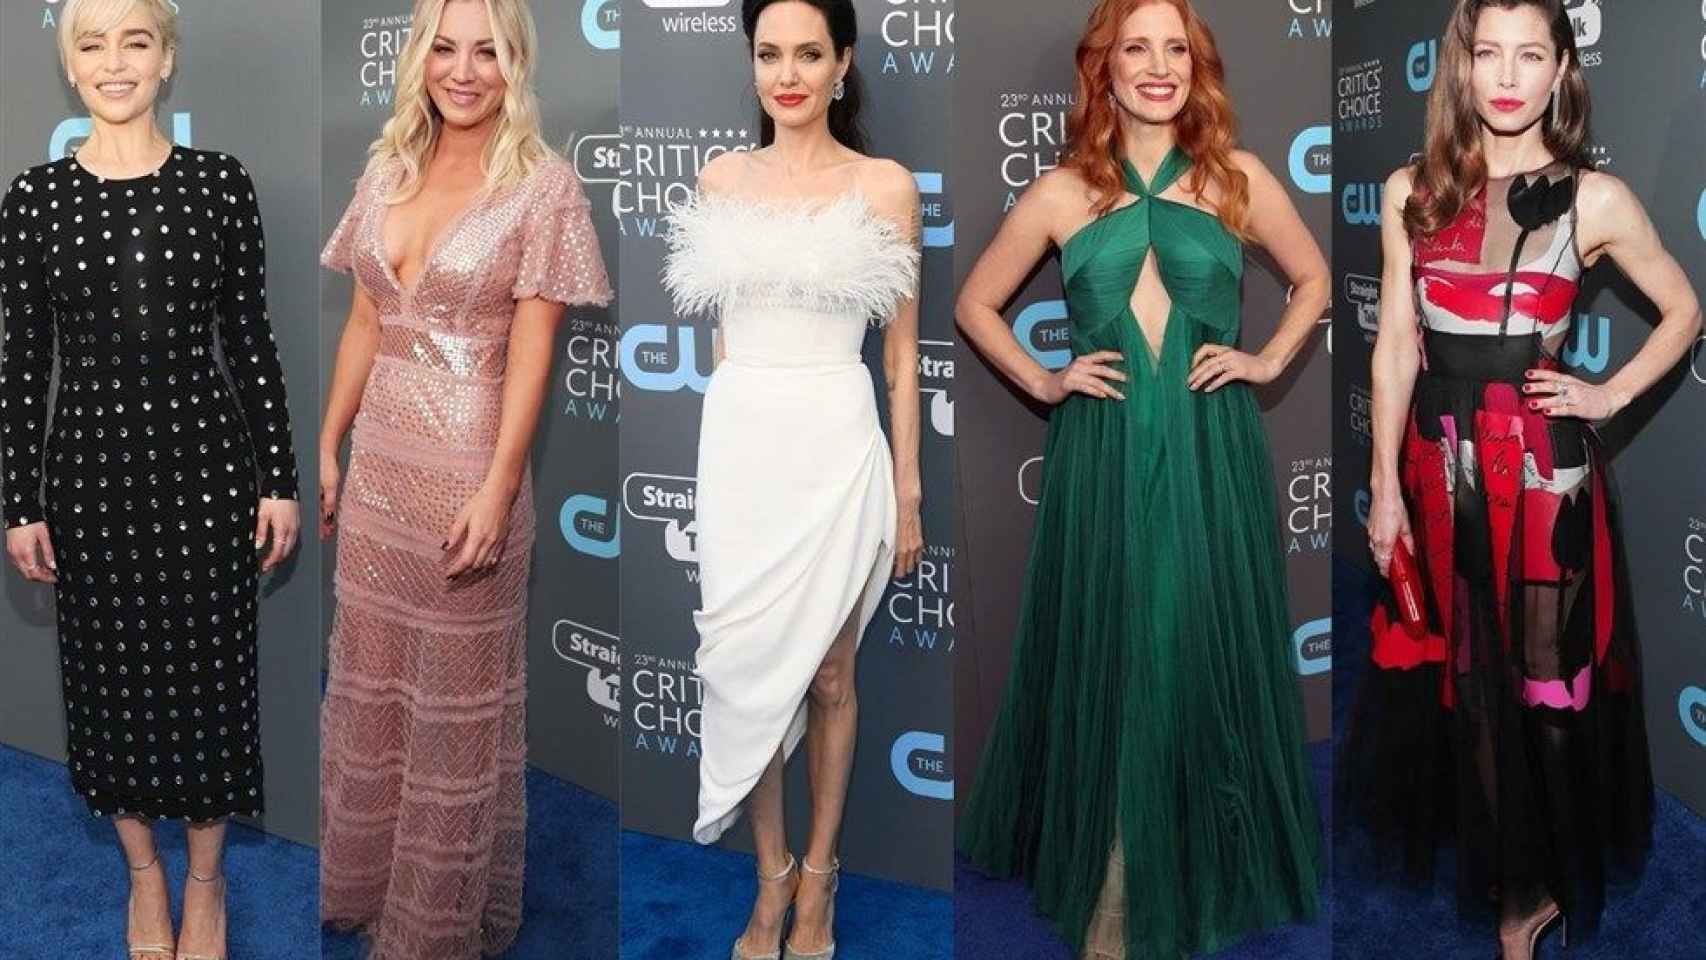 Las actrices de Hollywood en la gala Critic's Choice Awards